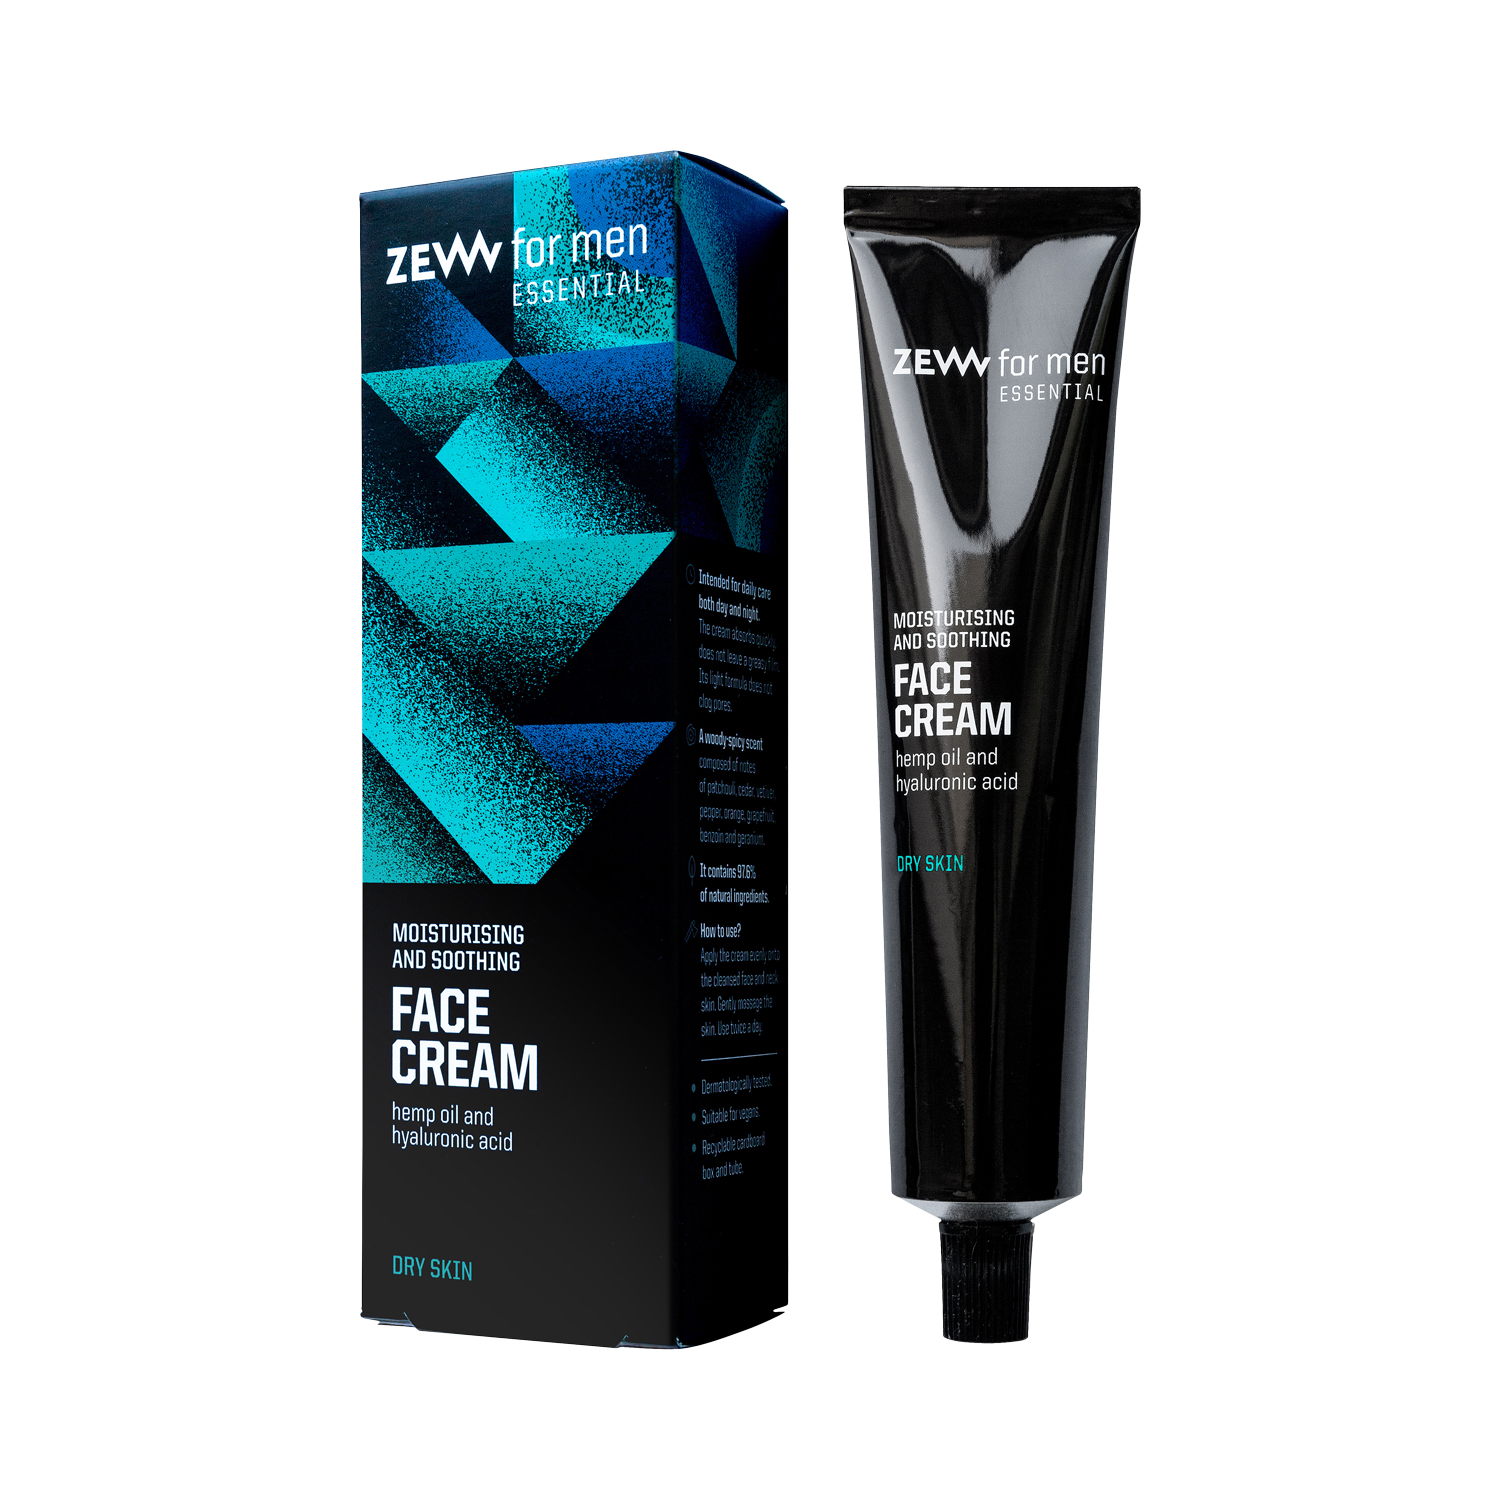 ZEW for men - Essential Face Cream - Feuchtigkeitscreme für trockene Haut